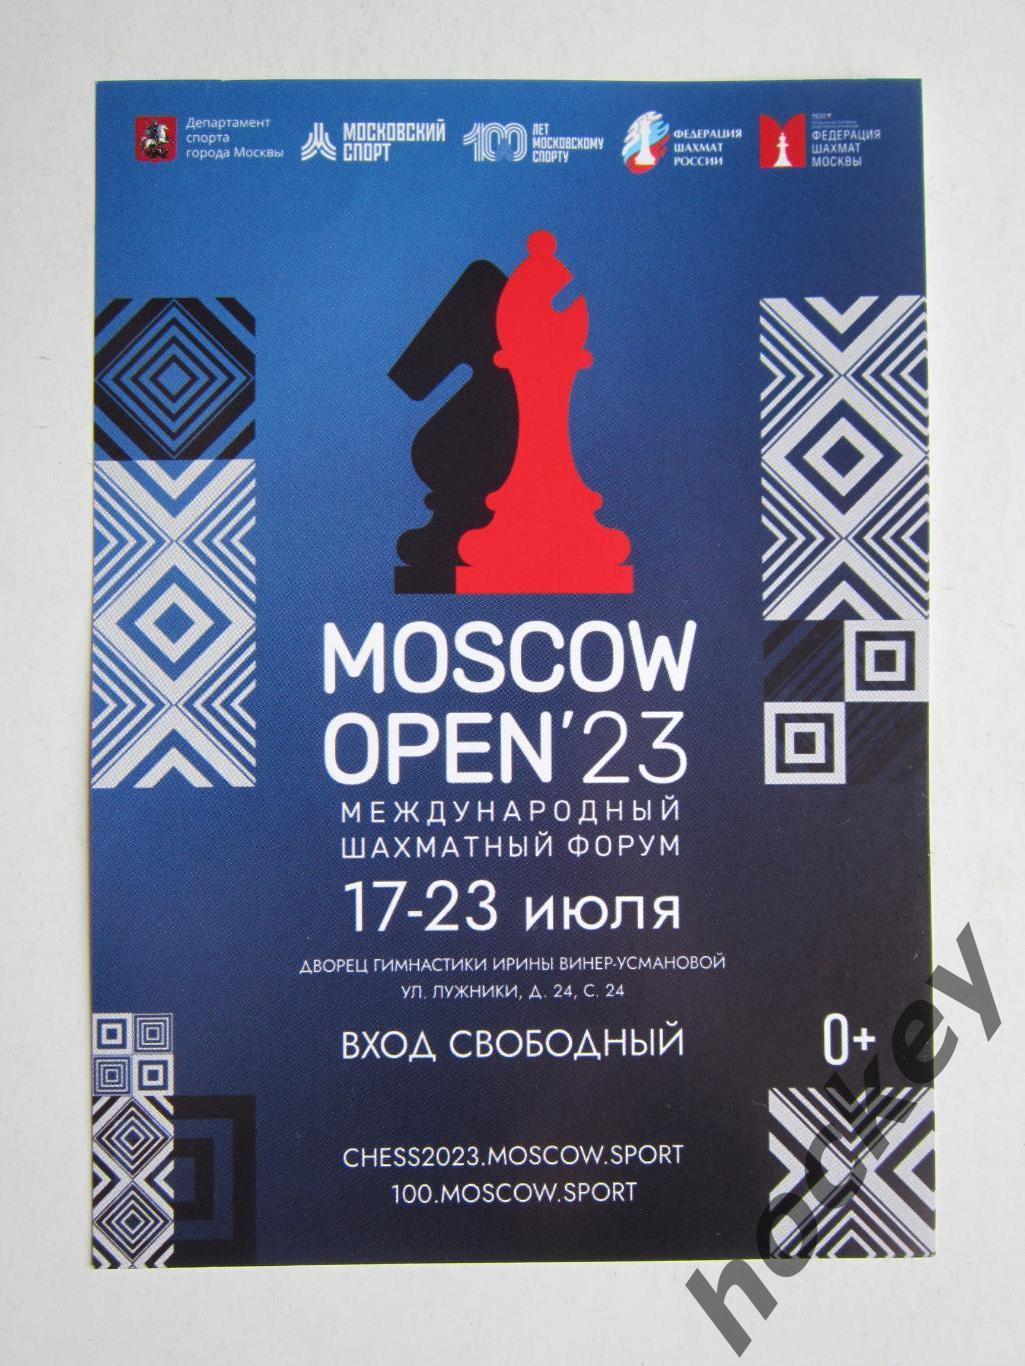 Moscow Open 2023. Международный шахматный форум. Приглашение. 17-23.07.2023